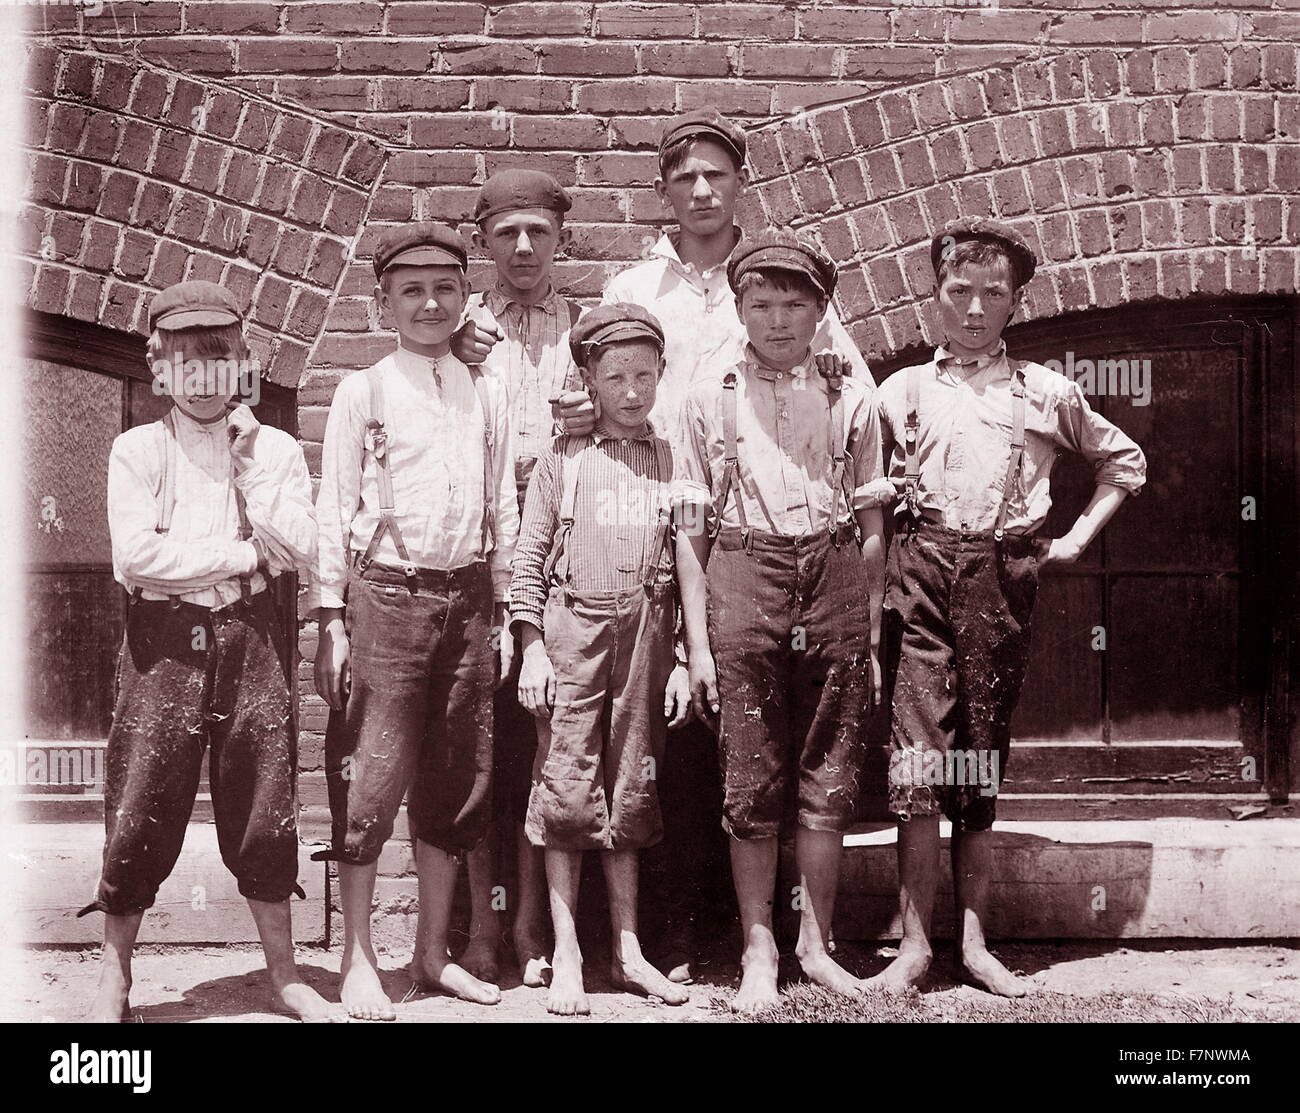 Kinderarbeit in den USA Anfang des 20. Jahrhunderts: Abnehmer jungen in Aragon Mühlen, Rock Hill, South Carolina, fotografiert von Lewis Hine am 13. Mai 1912 Stockfoto